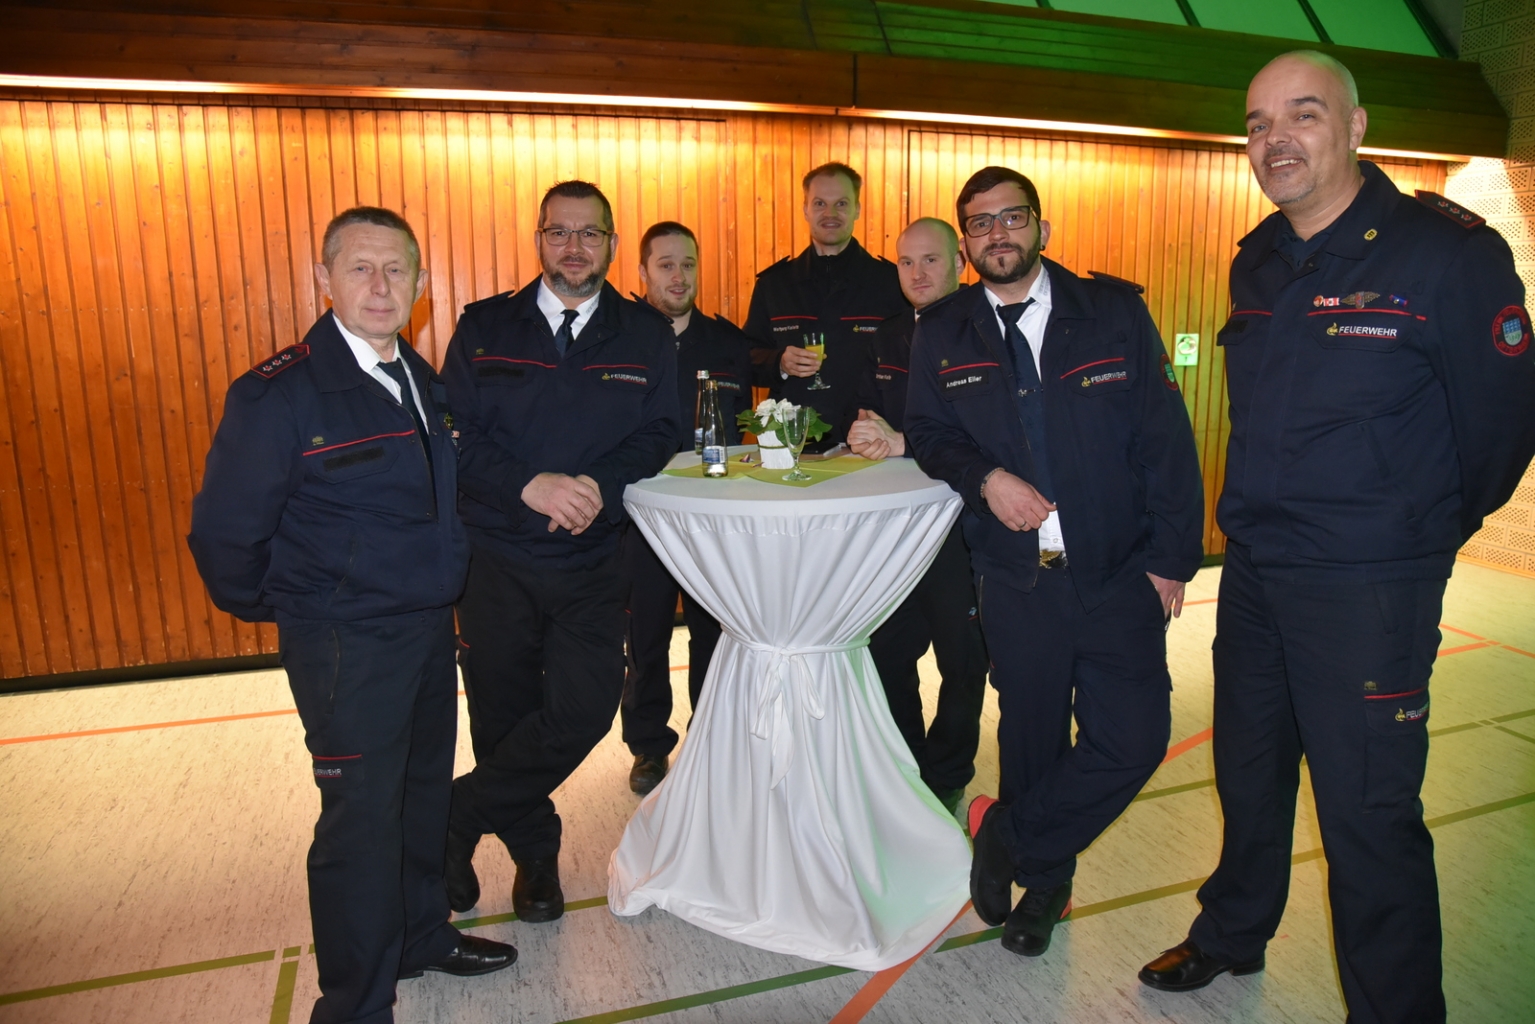 Auch eine stattliche Abordnung der Freiwilligen Feuerwehr Oftersheim war vertreten.